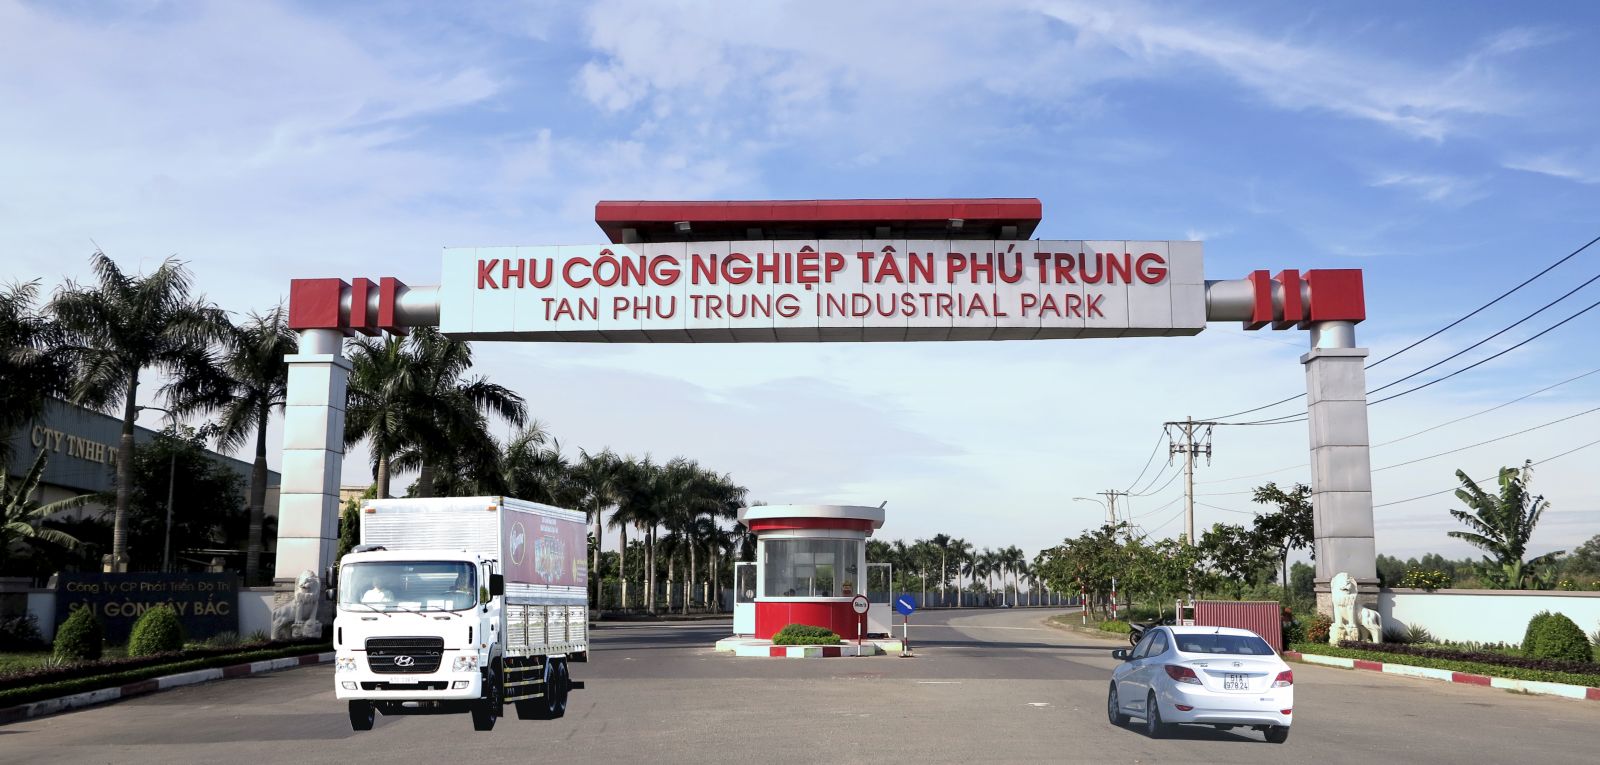 Khu công nghiệp Tân Phú Trung